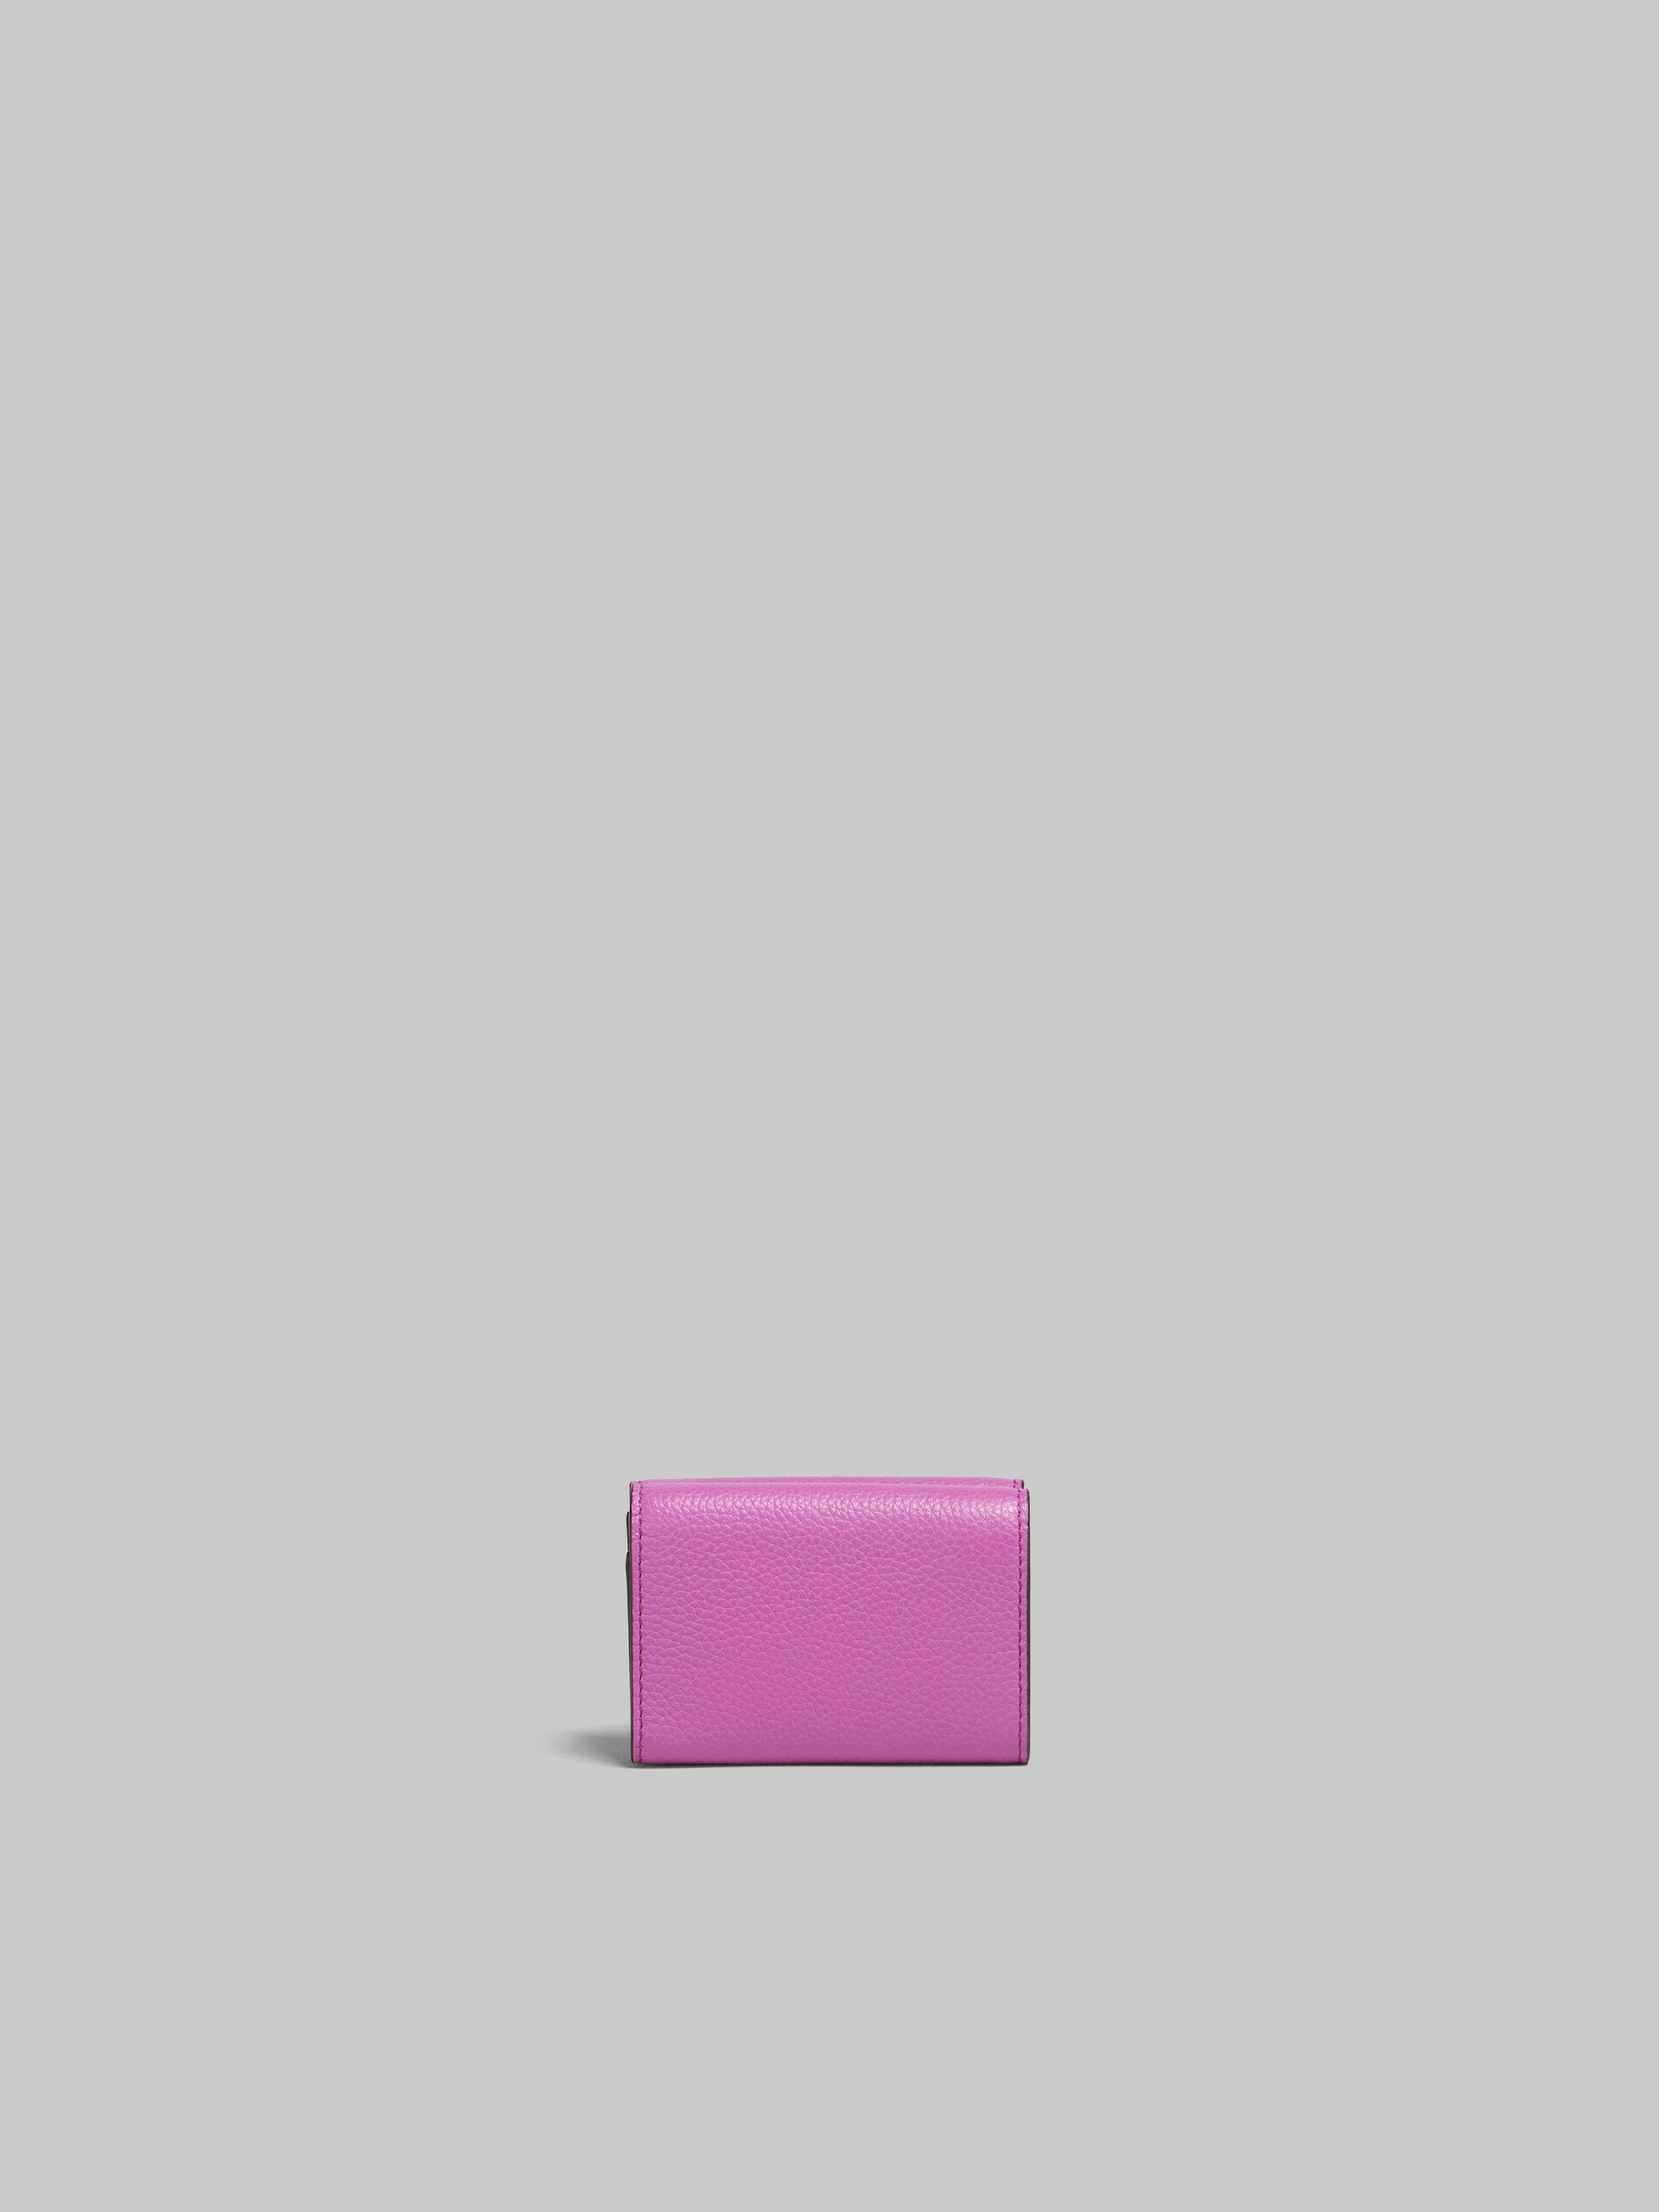 Portafoglio tri-fold in pelle rosa con impunture Marni - Portafogli - Image 3